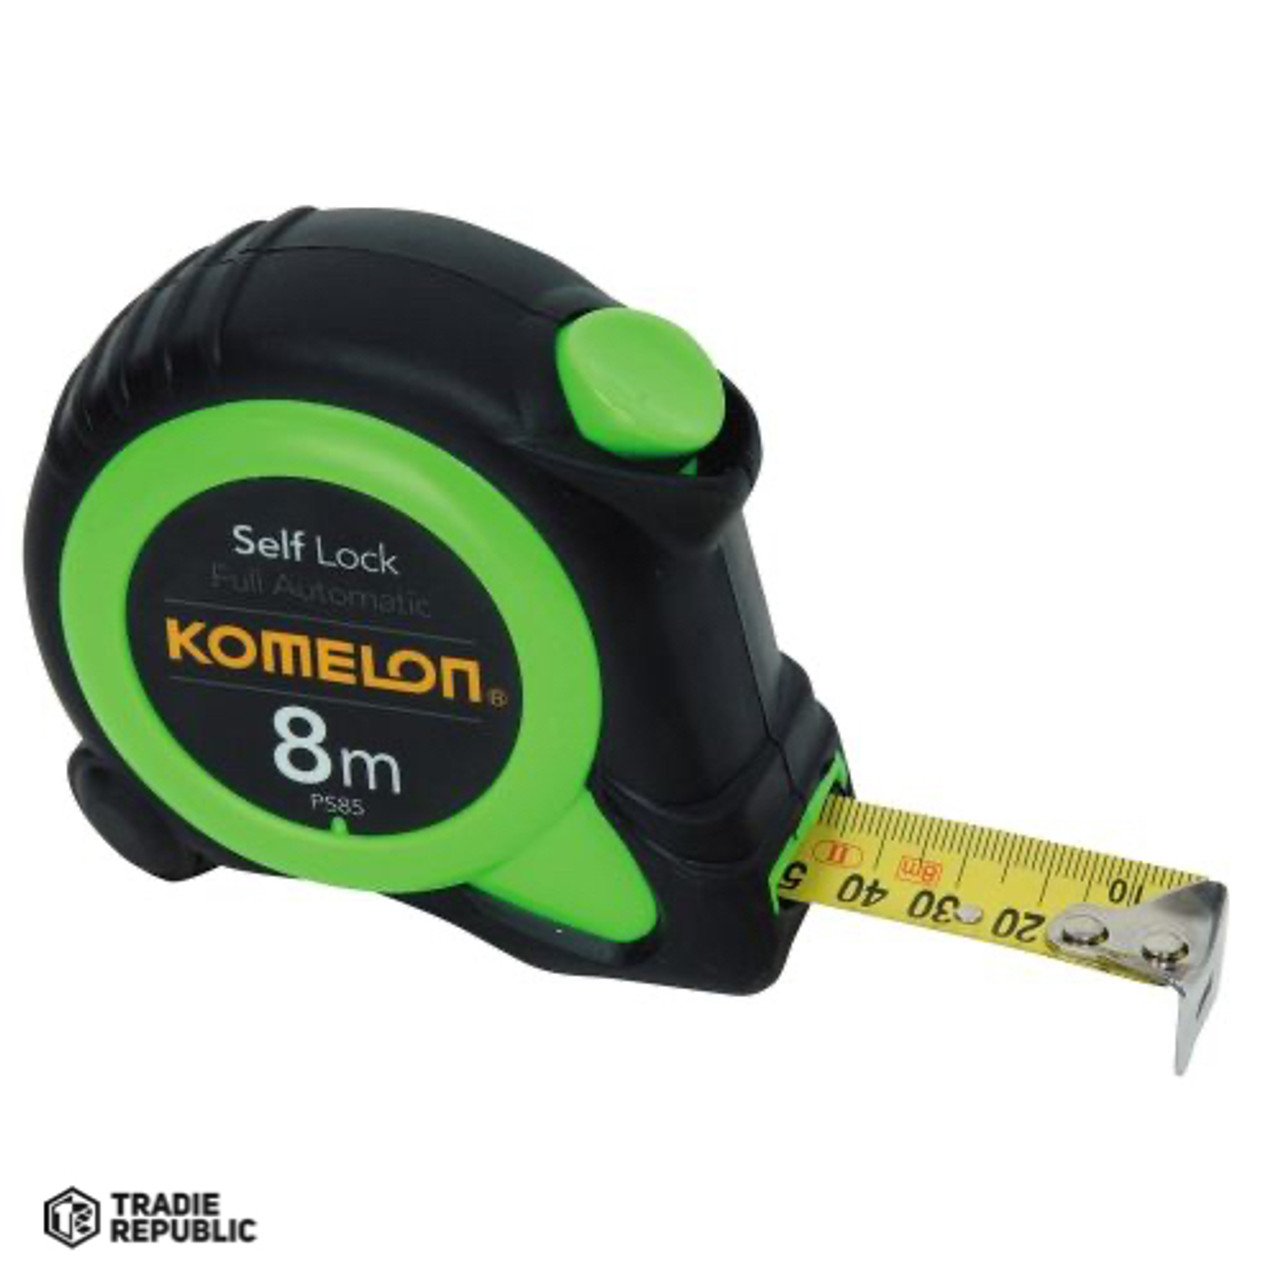 TA3390 Komelon 8mx25mm Green Full Auto Self Lock Pocket Tape (psg85)